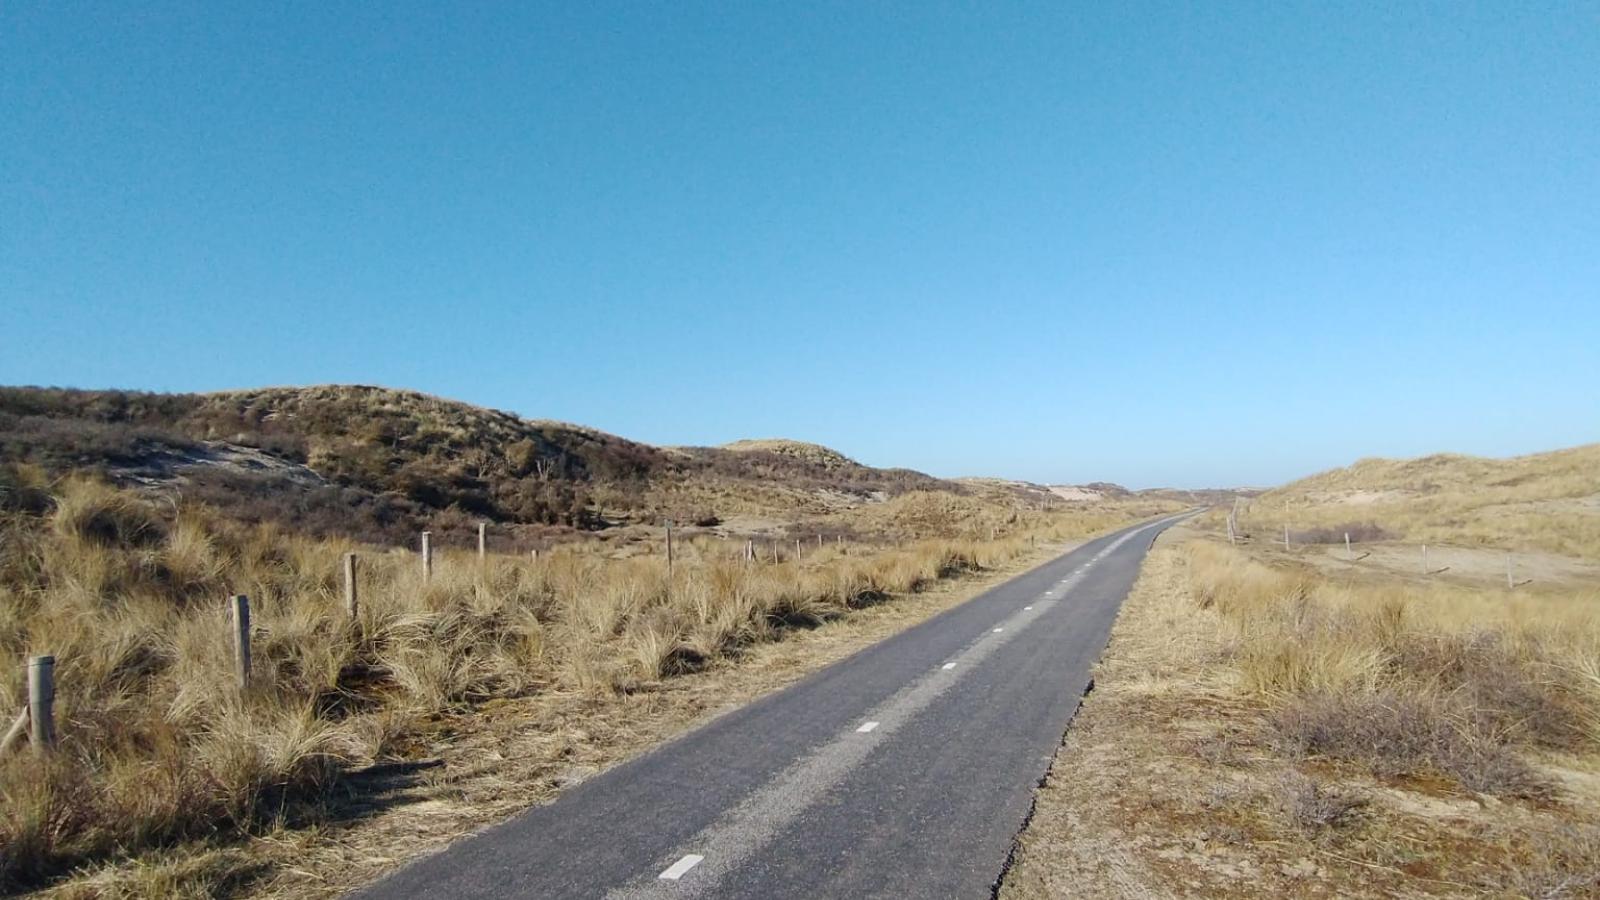 Ein leerer Radweg führt aus dem Bild hinaus. Zur linken und rechten Seite des Weges sind Dünen. Der Himmel ist ganz blau.